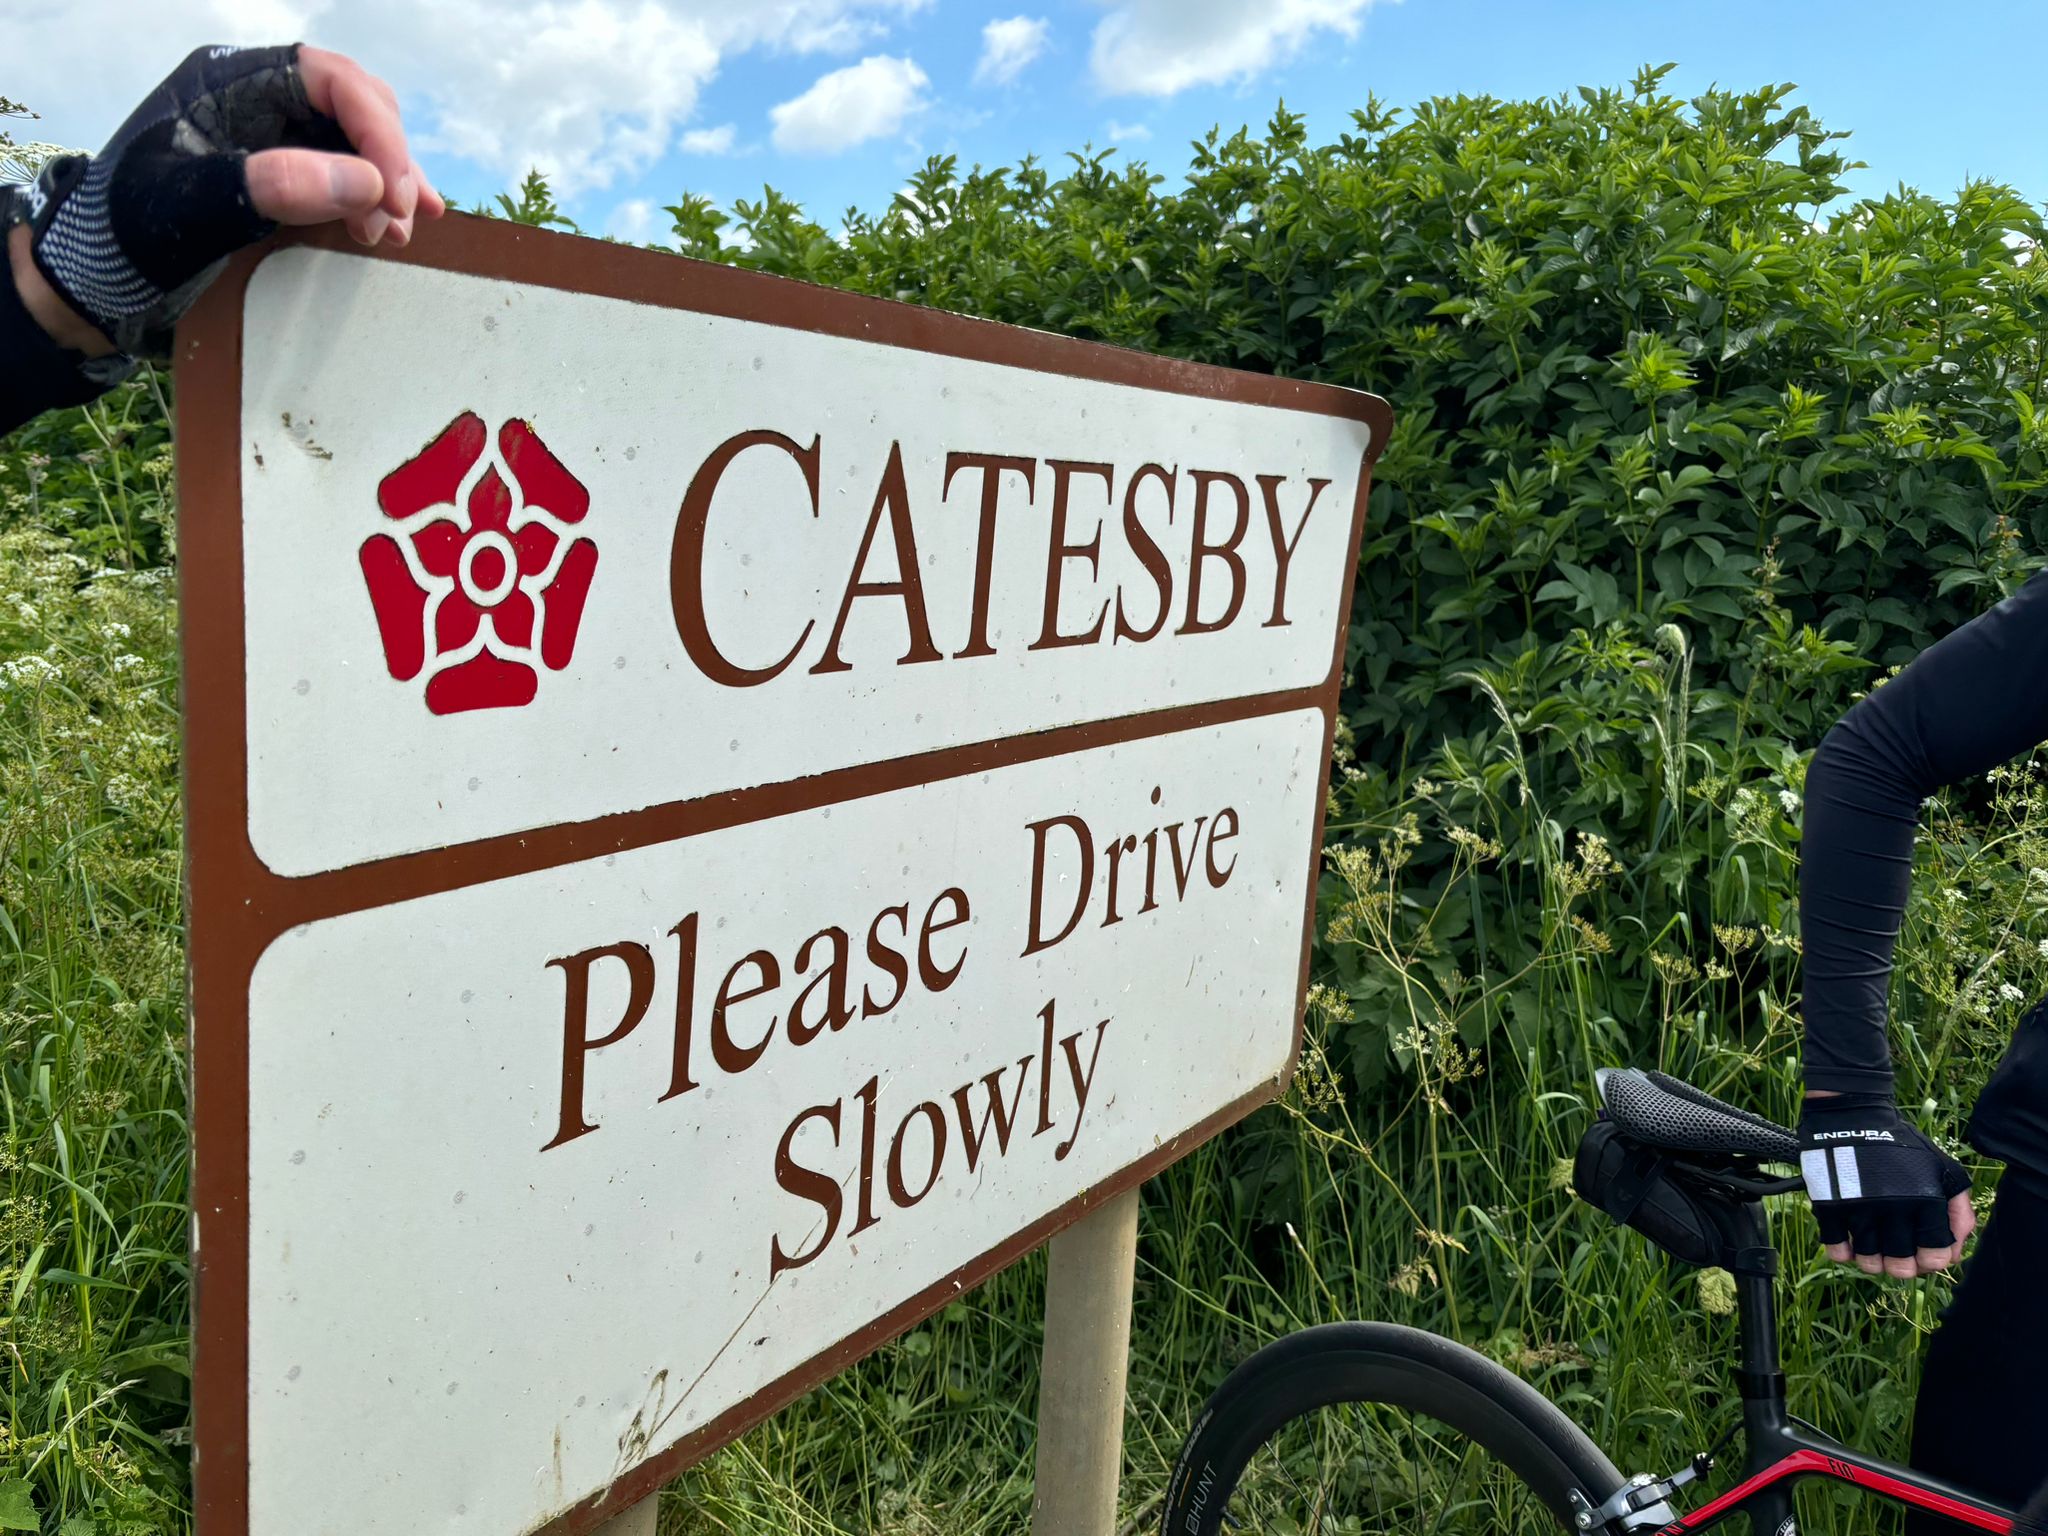 Catesby Estates 